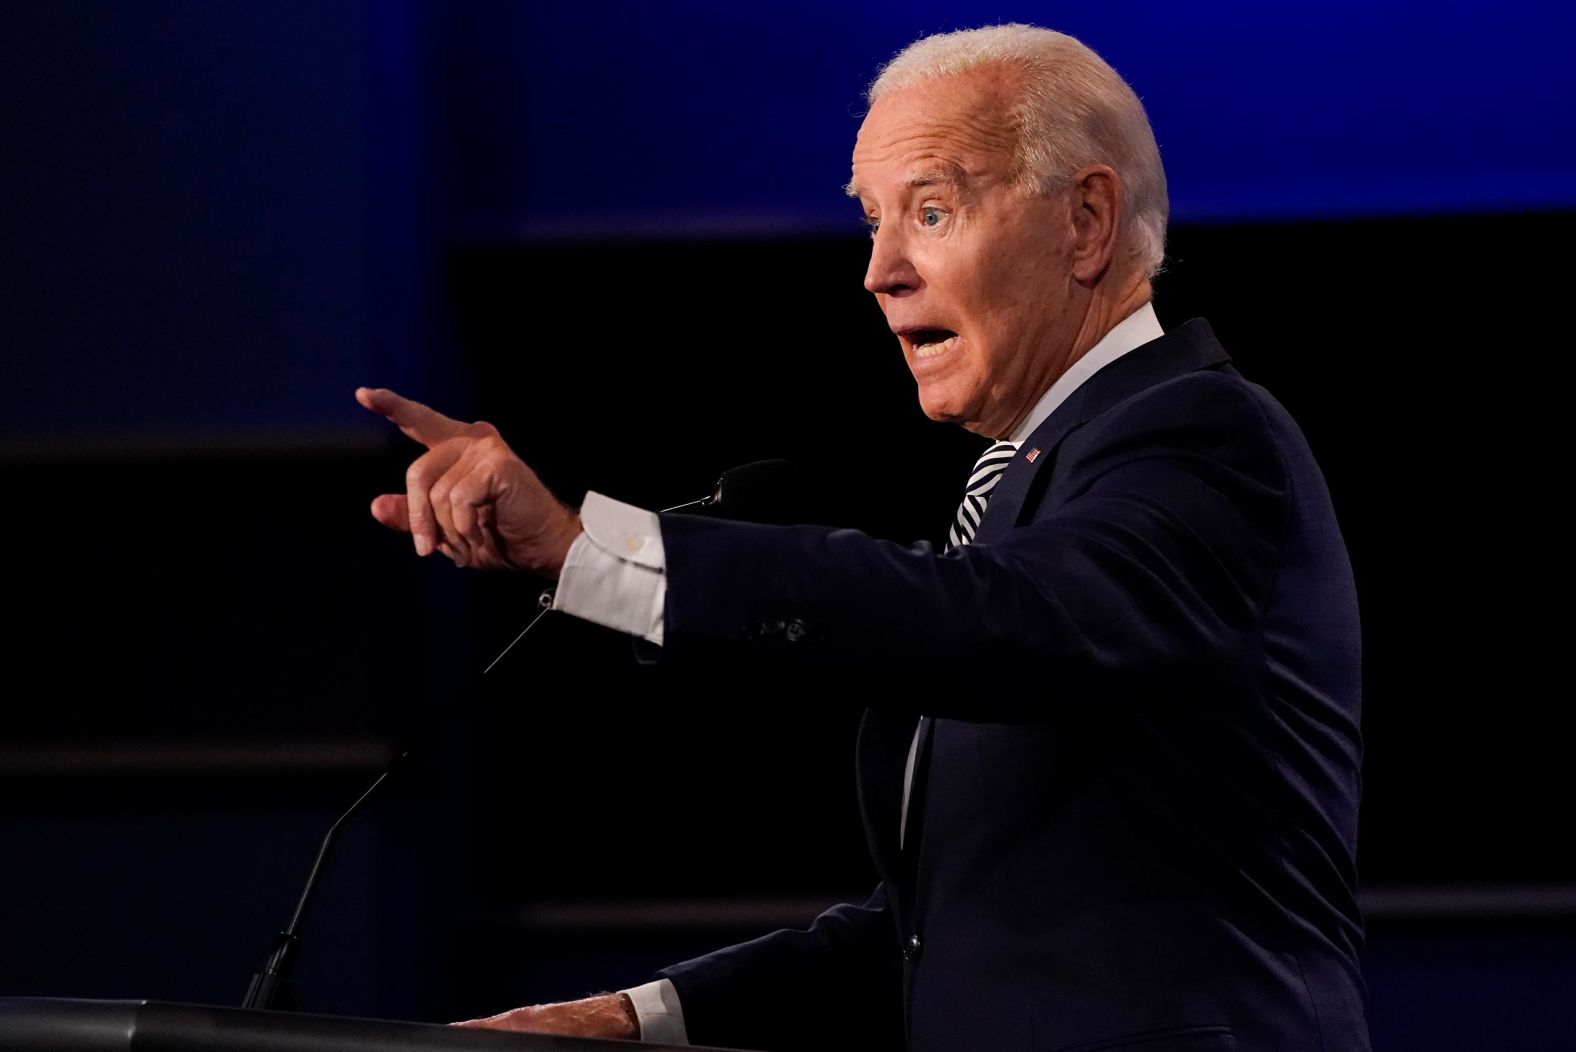 Biden gestures during the debate.